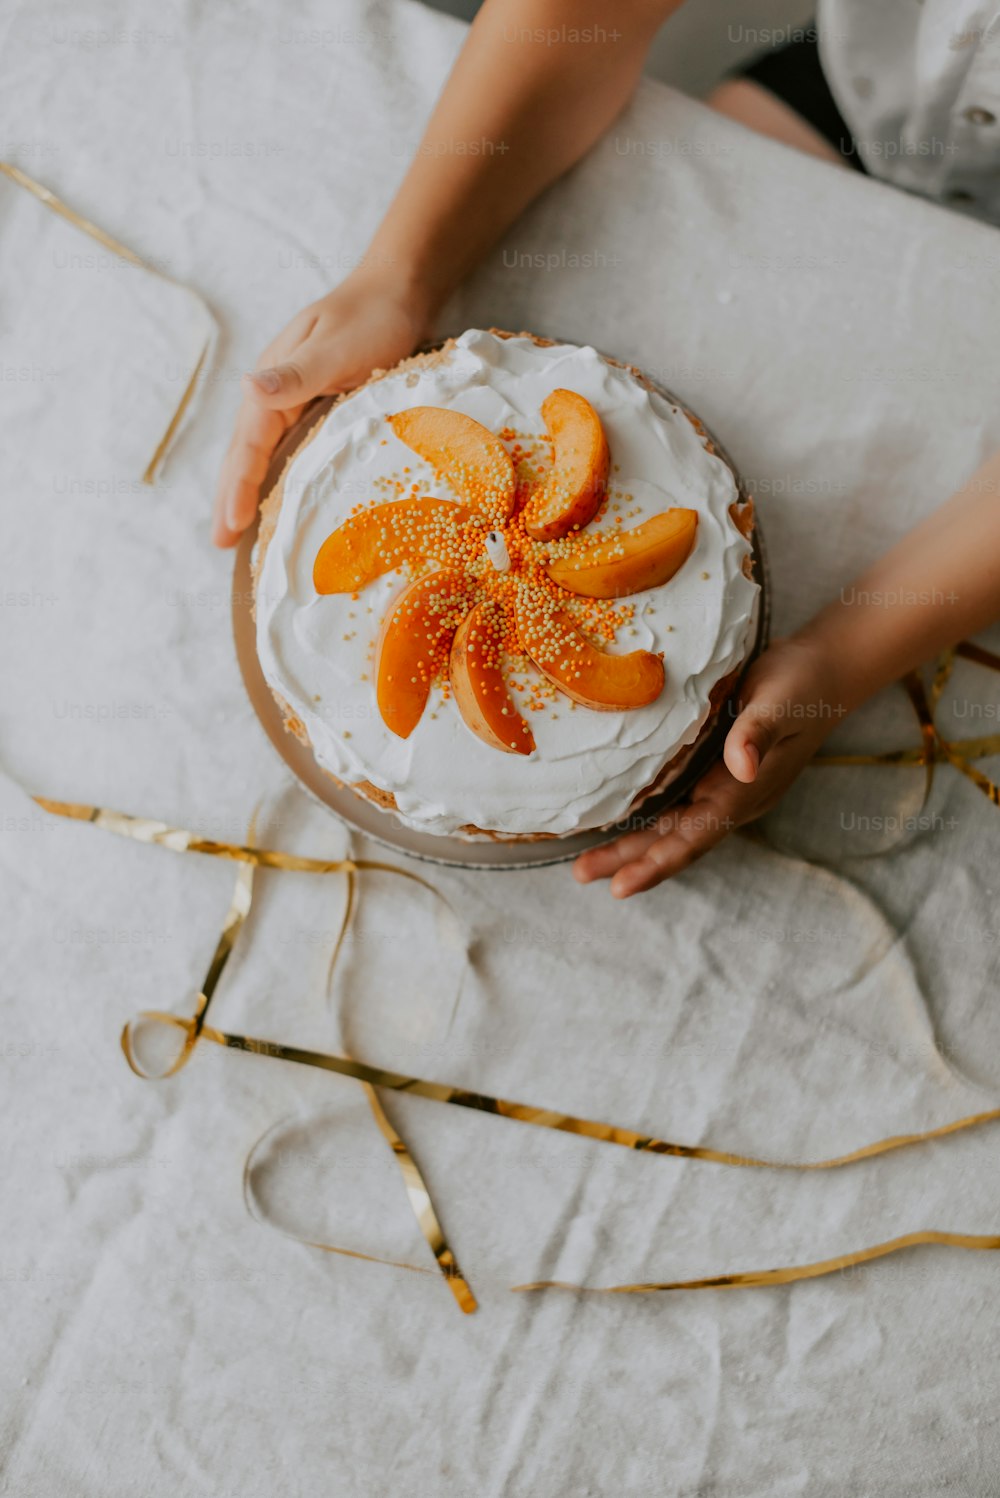 una persona sosteniendo un pastel con rodajas de naranja